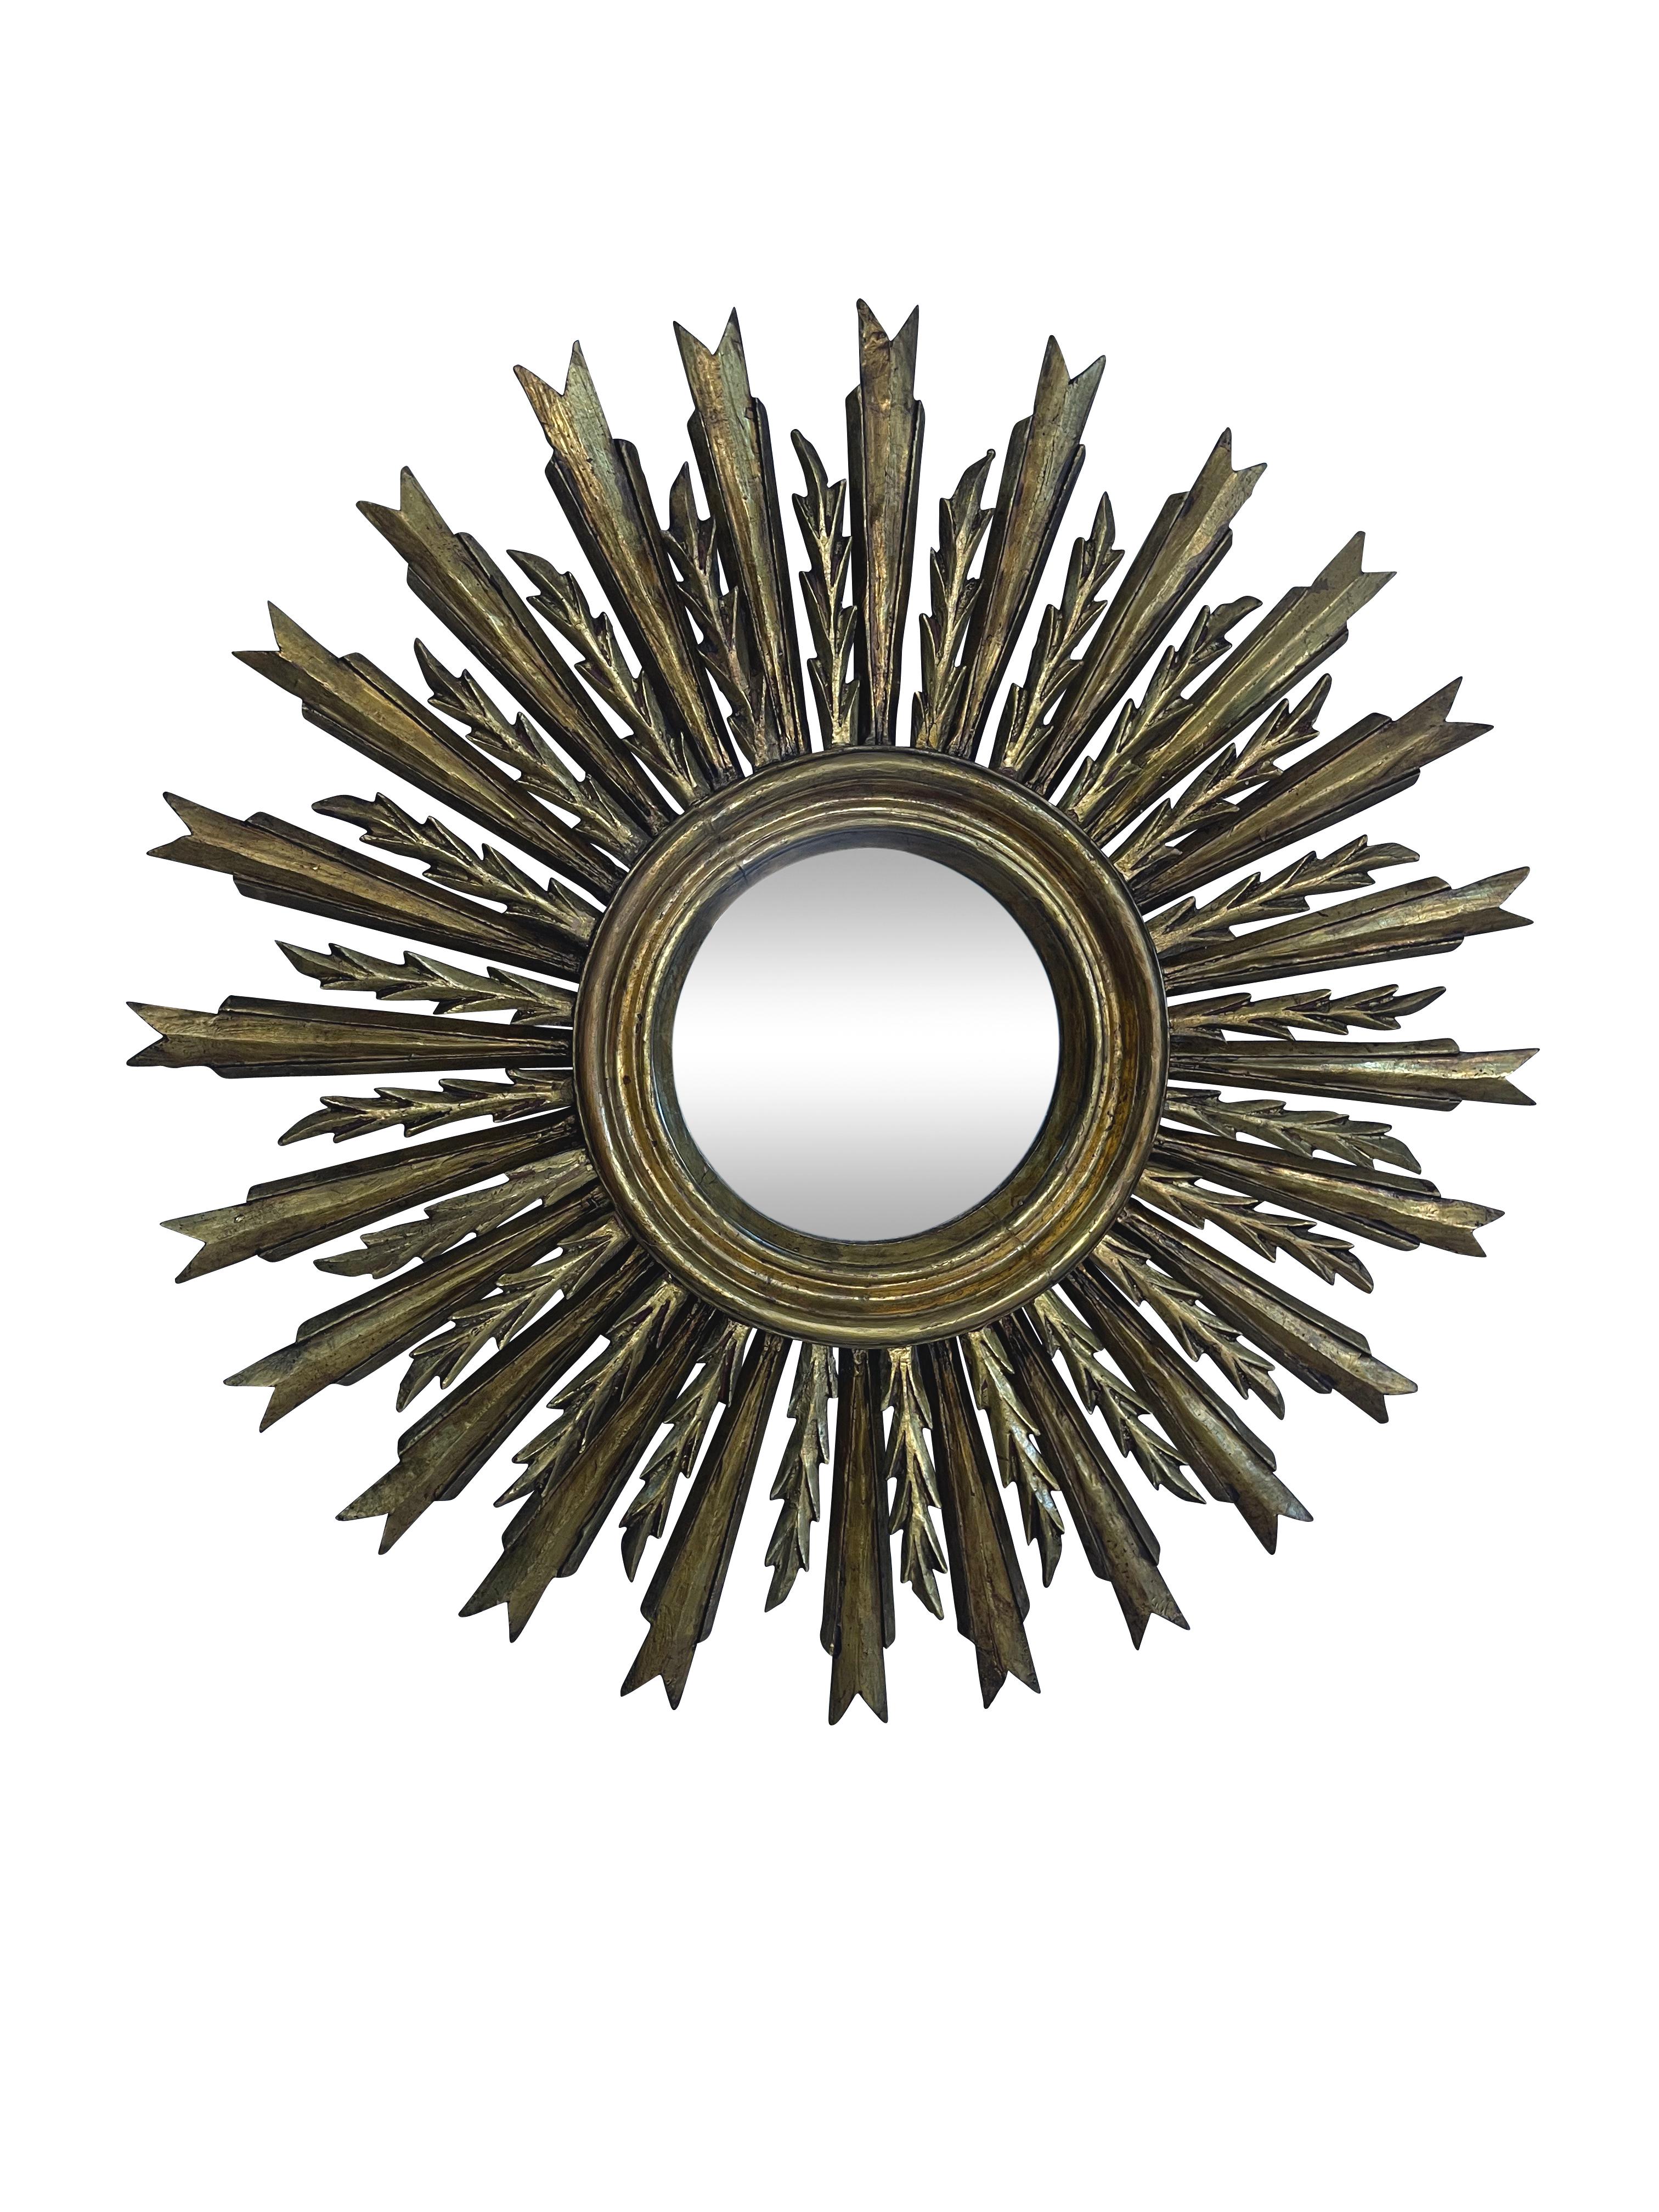 Ein schöner französischer vergoldeter Sunburst- (oder Starburst-) Spiegel mit einer doppelten Reihe von vergoldeten Holzstrahlen, die um das Zentrum der ursprünglichen Glasspiegelplatte angeordnet sind. Neues Glas. Schöne alte Patina und originale